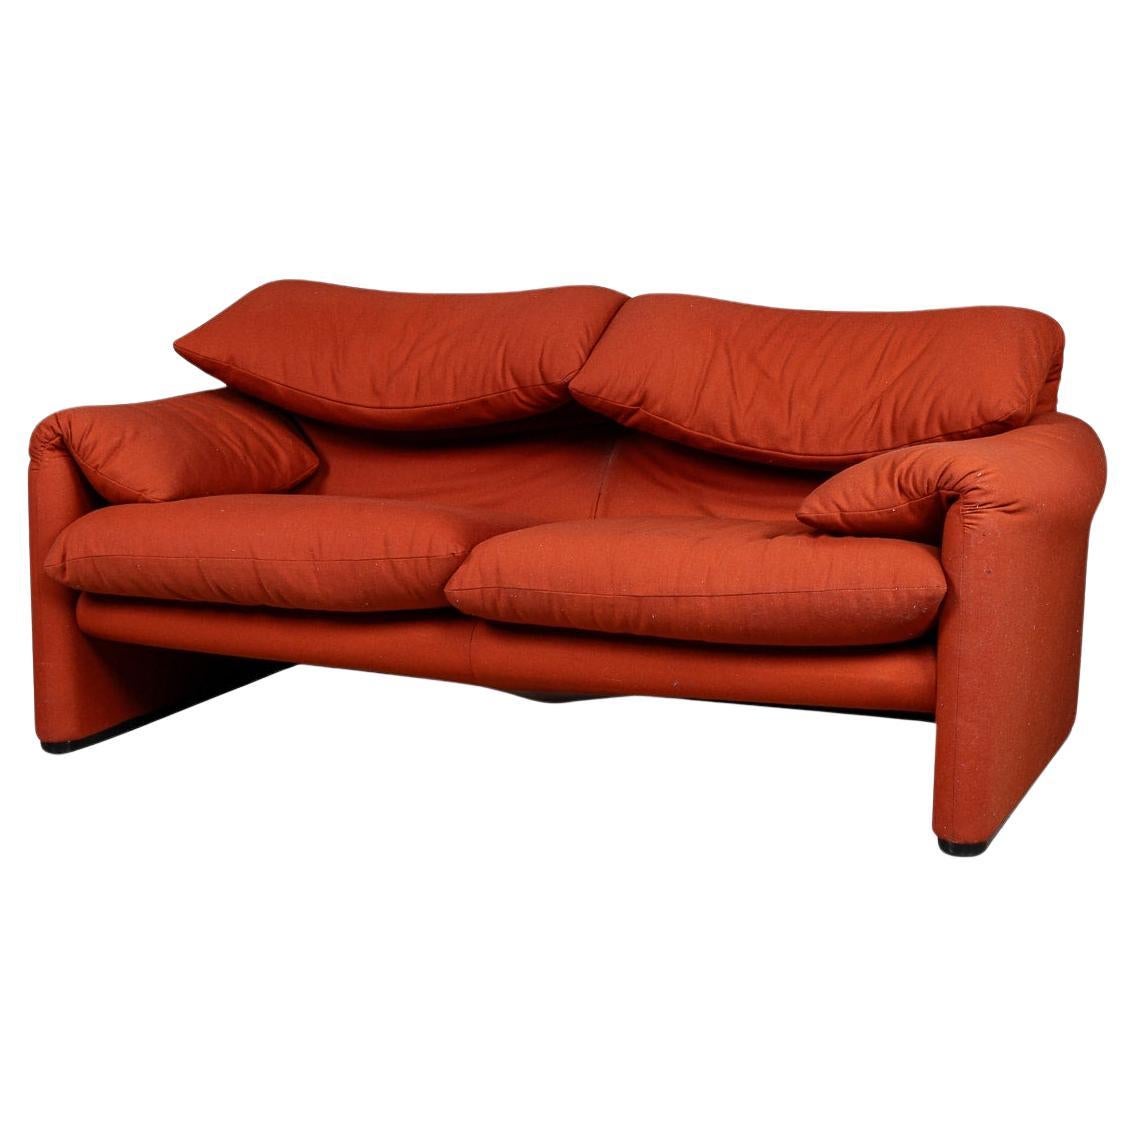 Italian 20th Century Maralunga Sofa In Original Red Fabric By Vico Magistretti For Sale